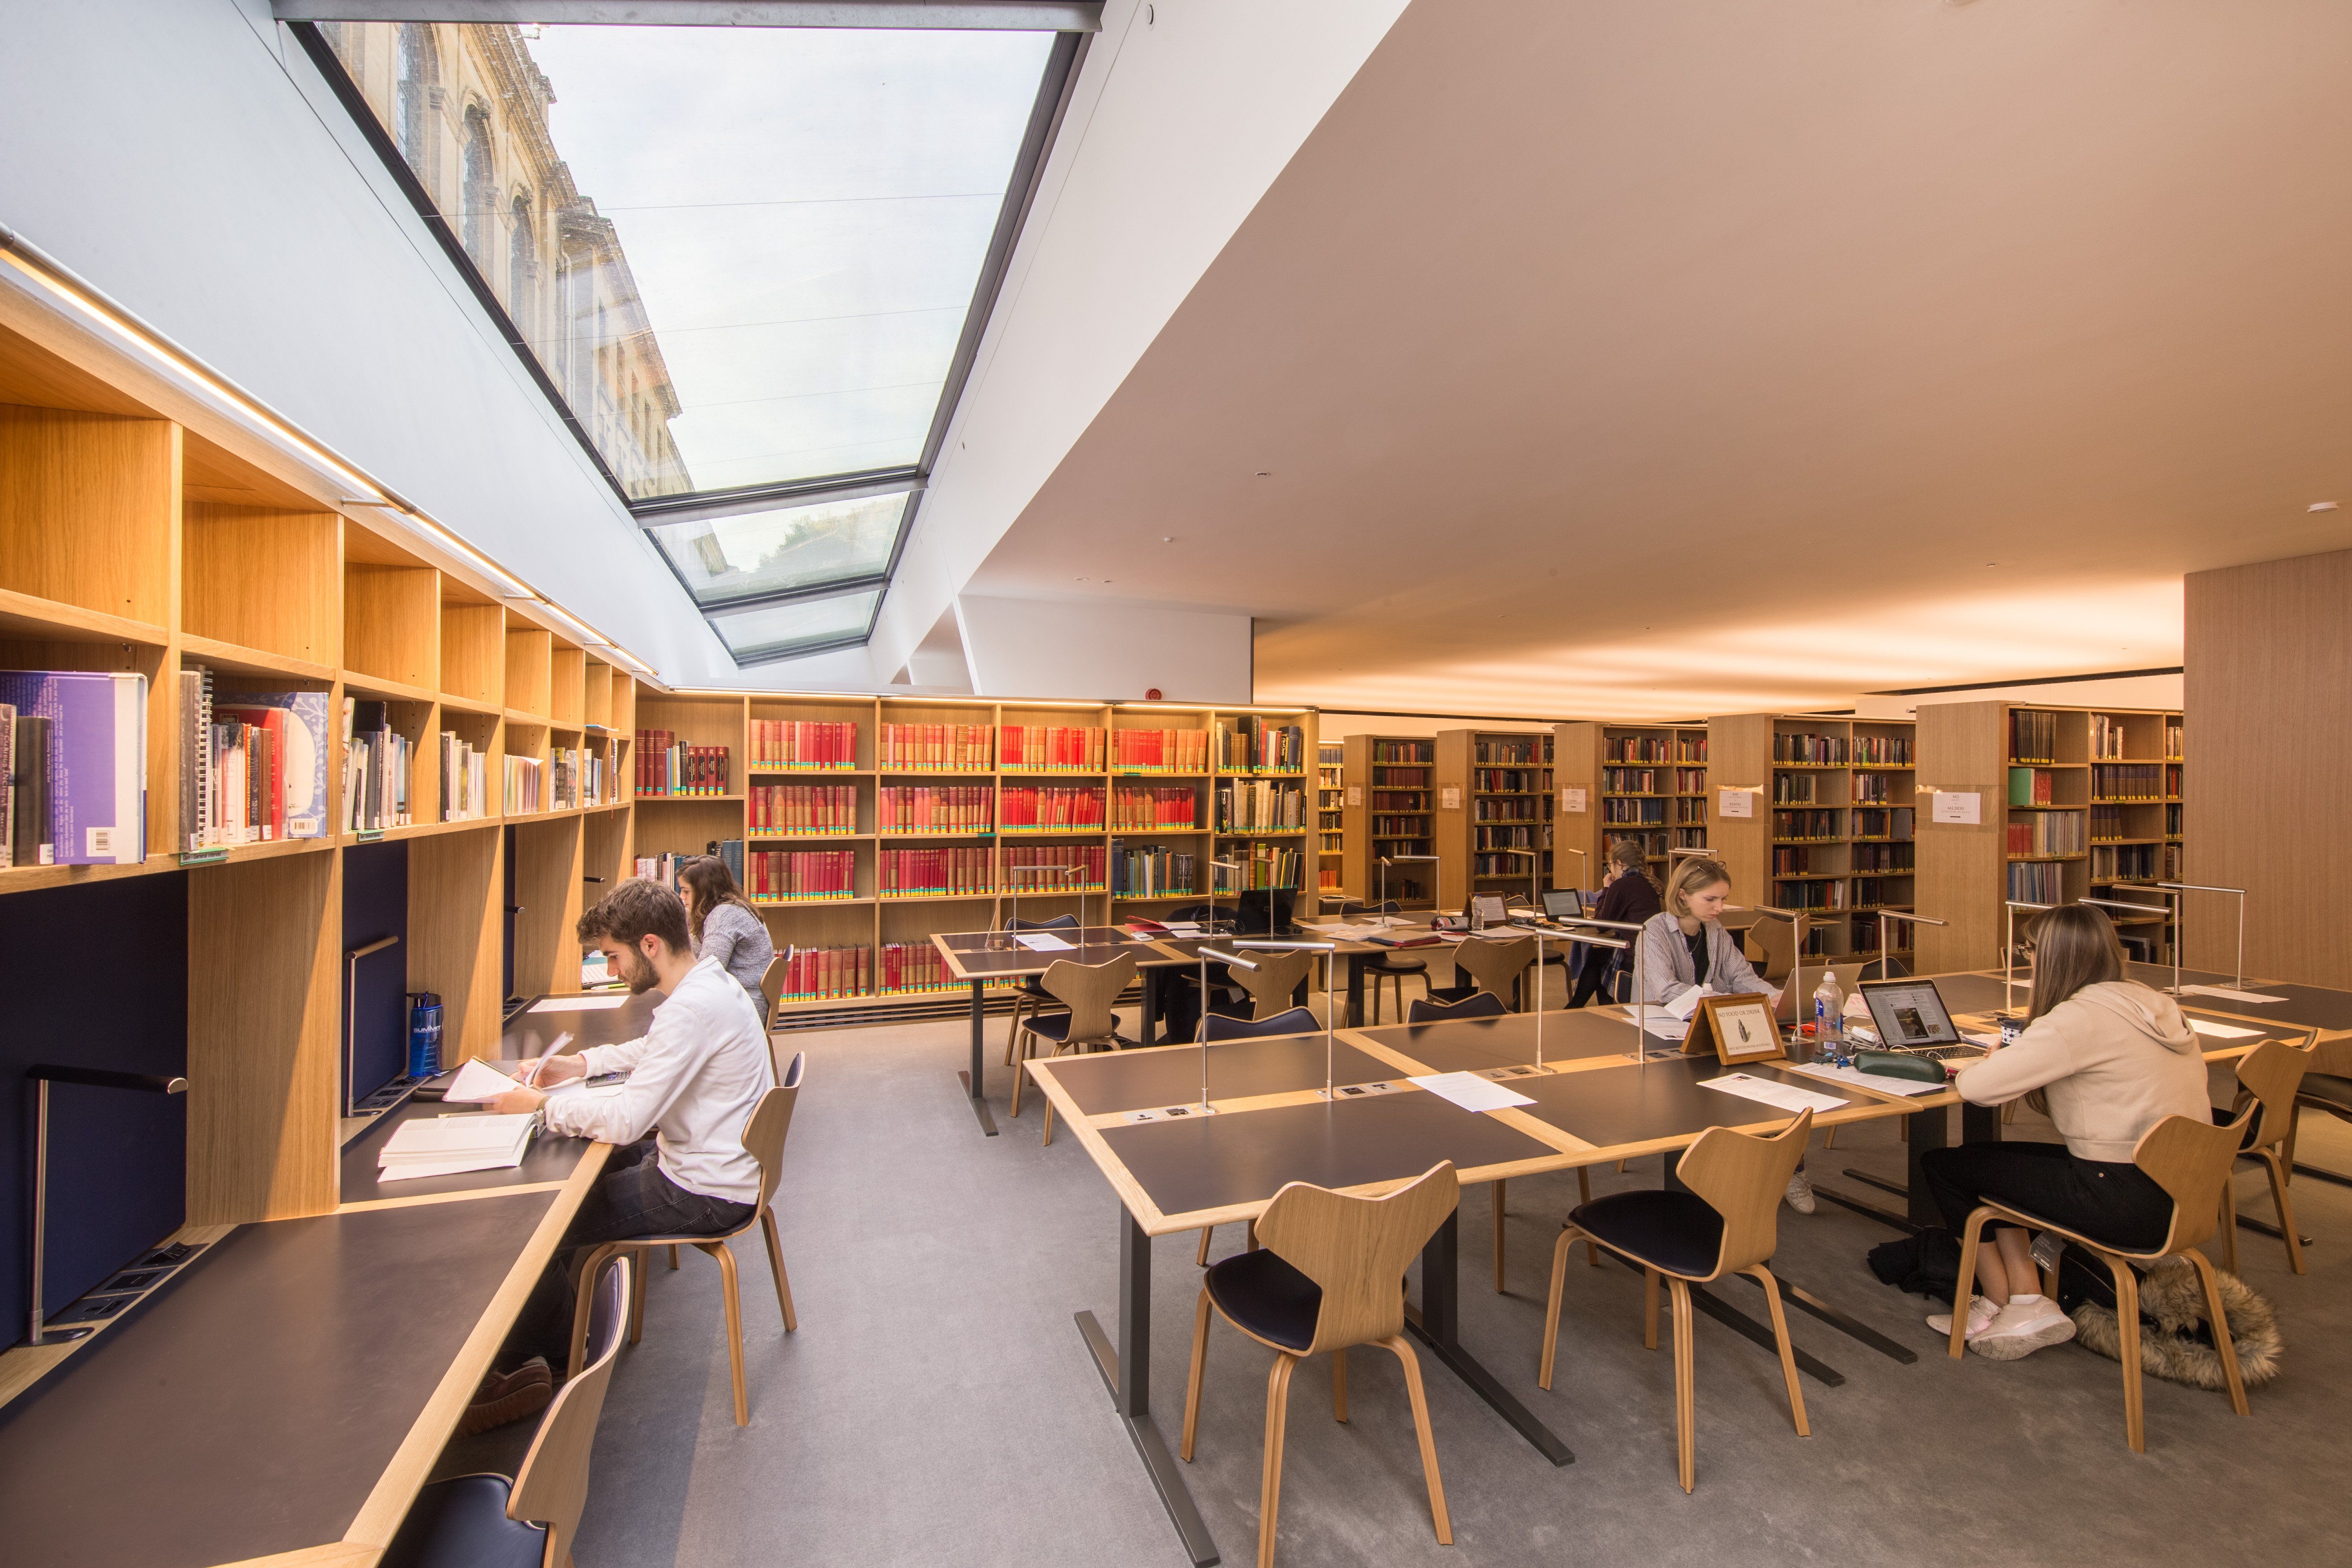 Библиотека учебных материалов. Библиотека Оксфорда. Университетские библиотеки Оксфорда. Современная библиотека. Читальный зал в библиотеке.